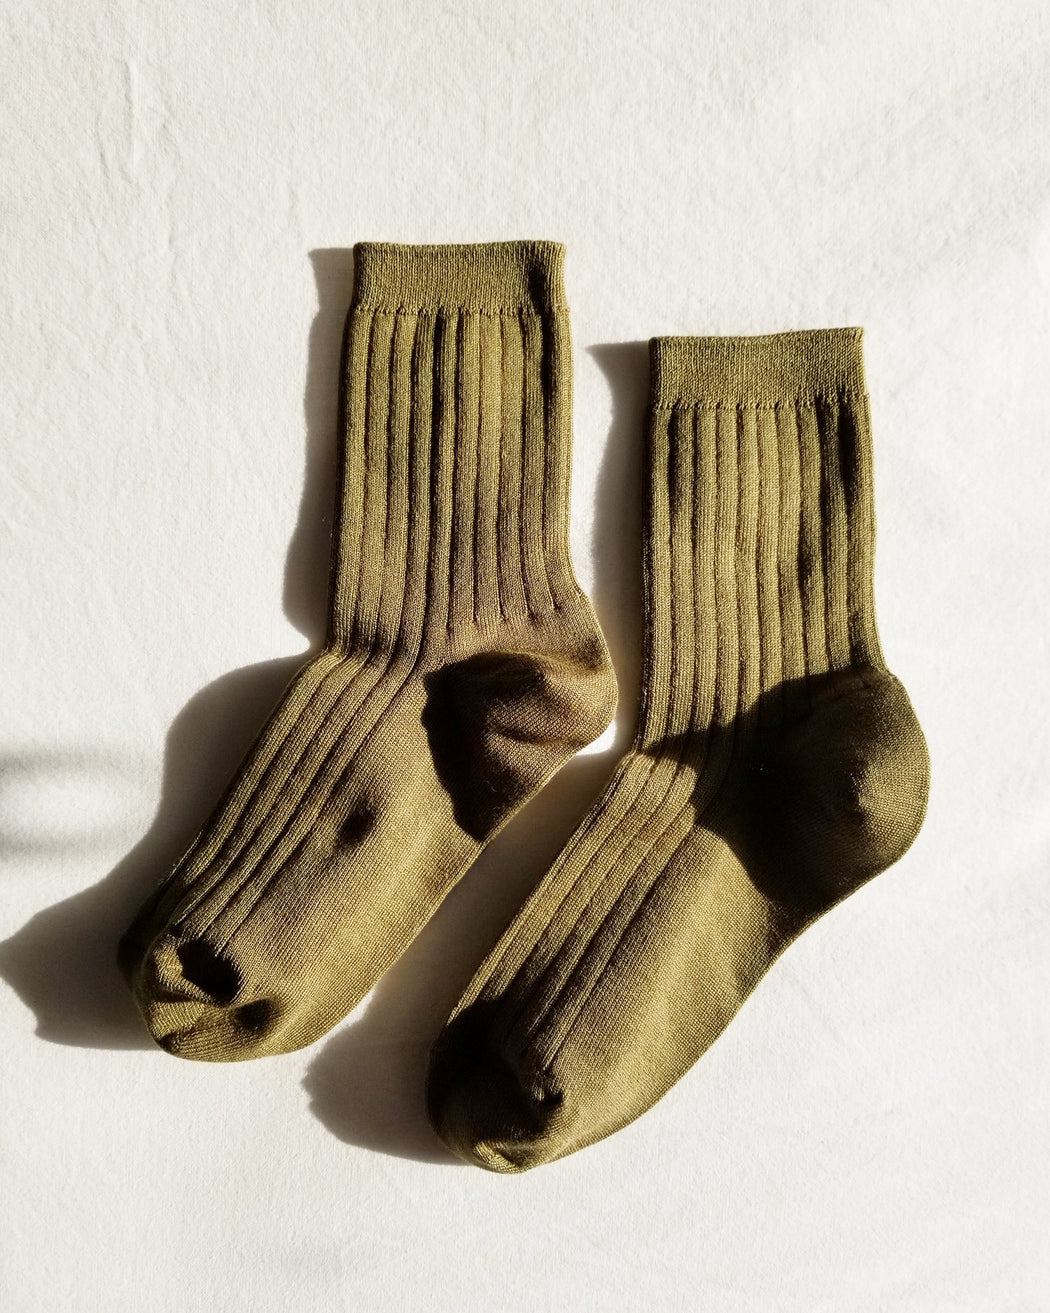 Her Socks – Pesto